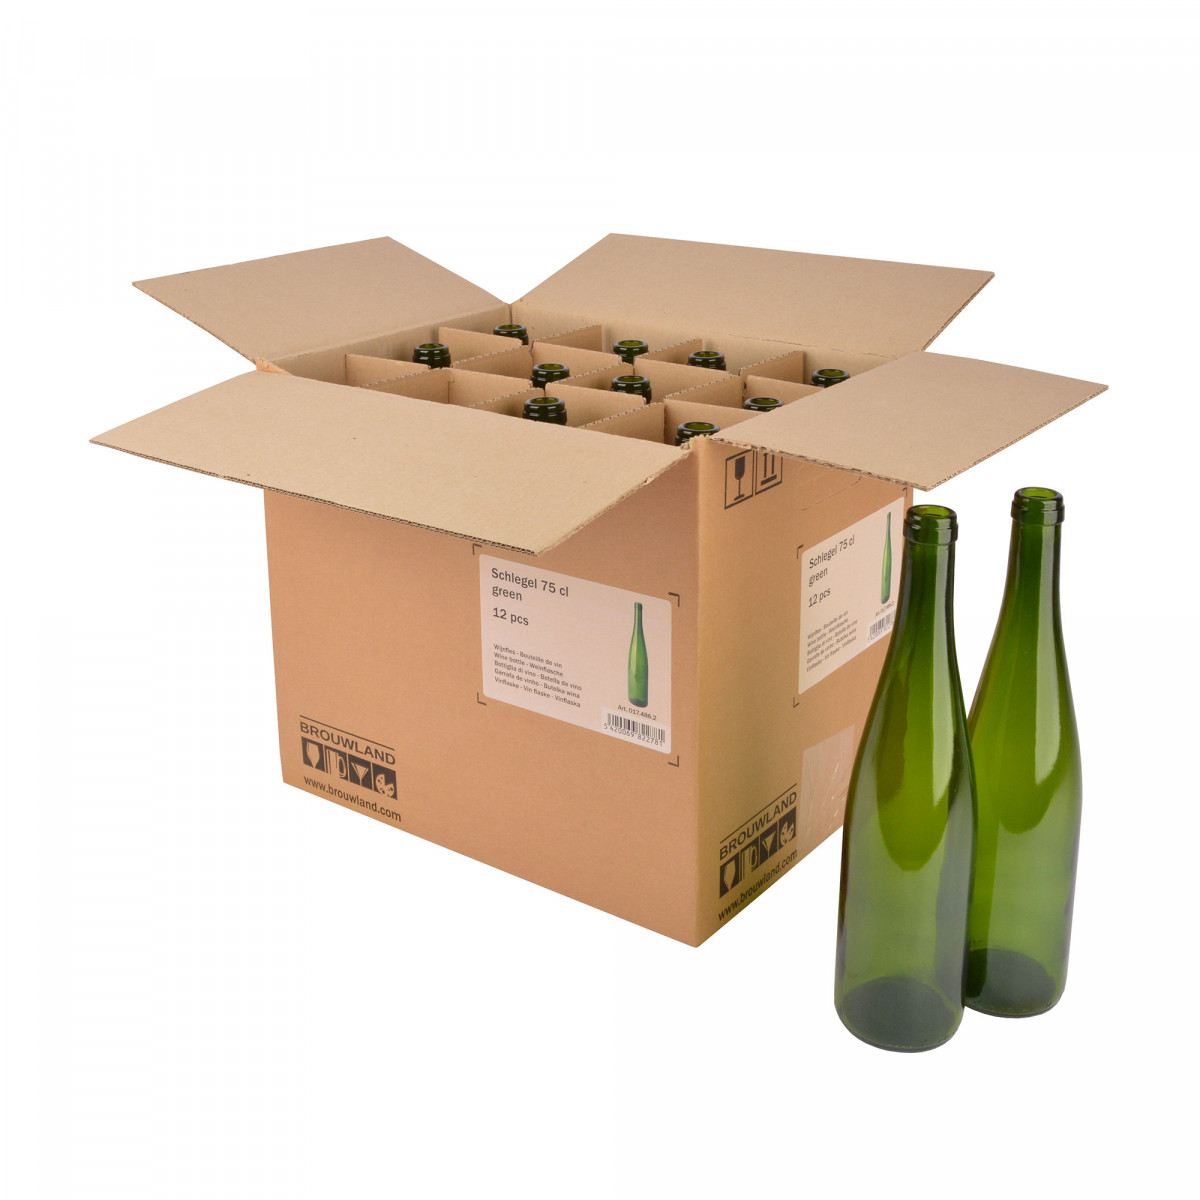 Weinflasche Schlegel 75 cl, grün, Karton 12 St.